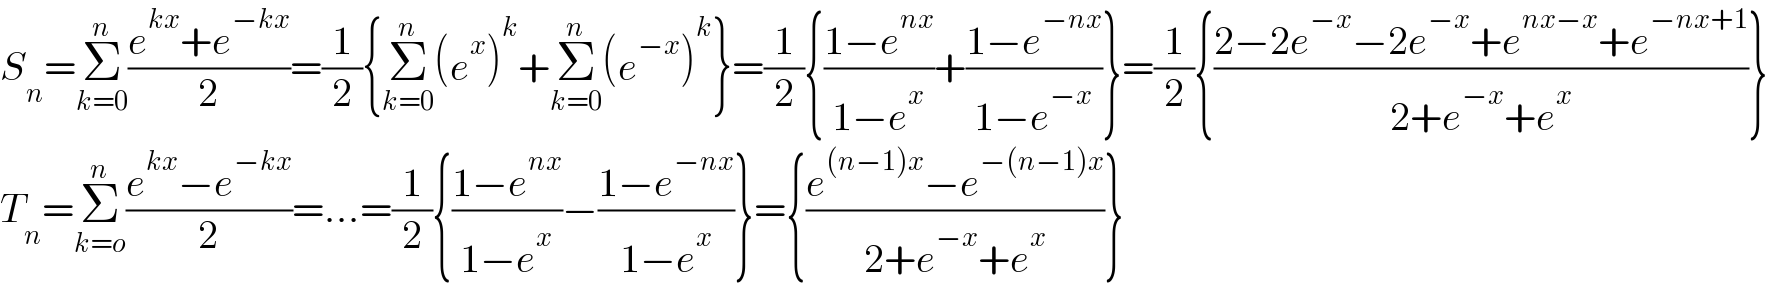 S_n =Σ_(k=0) ^n ((e^(kx) +e^(−kx) )/2)=(1/2){Σ_(k=0) ^n (e^x )^k +Σ_(k=0) ^n (e^(−x) )^k }=(1/2){((1−e^(nx) )/(1−e^x ))+((1−e^(−nx) )/(1−e^(−x) ))}=(1/2){((2−2e^(−x) −2e^(−x) +e^(nx−x) +e^(−nx+1) )/(2+e^(−x) +e^x ))}  T_n =Σ_(k=o) ^n ((e^(kx) −e^(−kx) )/2)=...=(1/2){((1−e^(nx) )/(1−e^x ))−((1−e^(−nx) )/(1−e^x ))}={((e^((n−1)x) −e^(−(n−1)x) )/(2+e^(−x) +e^x ))}  